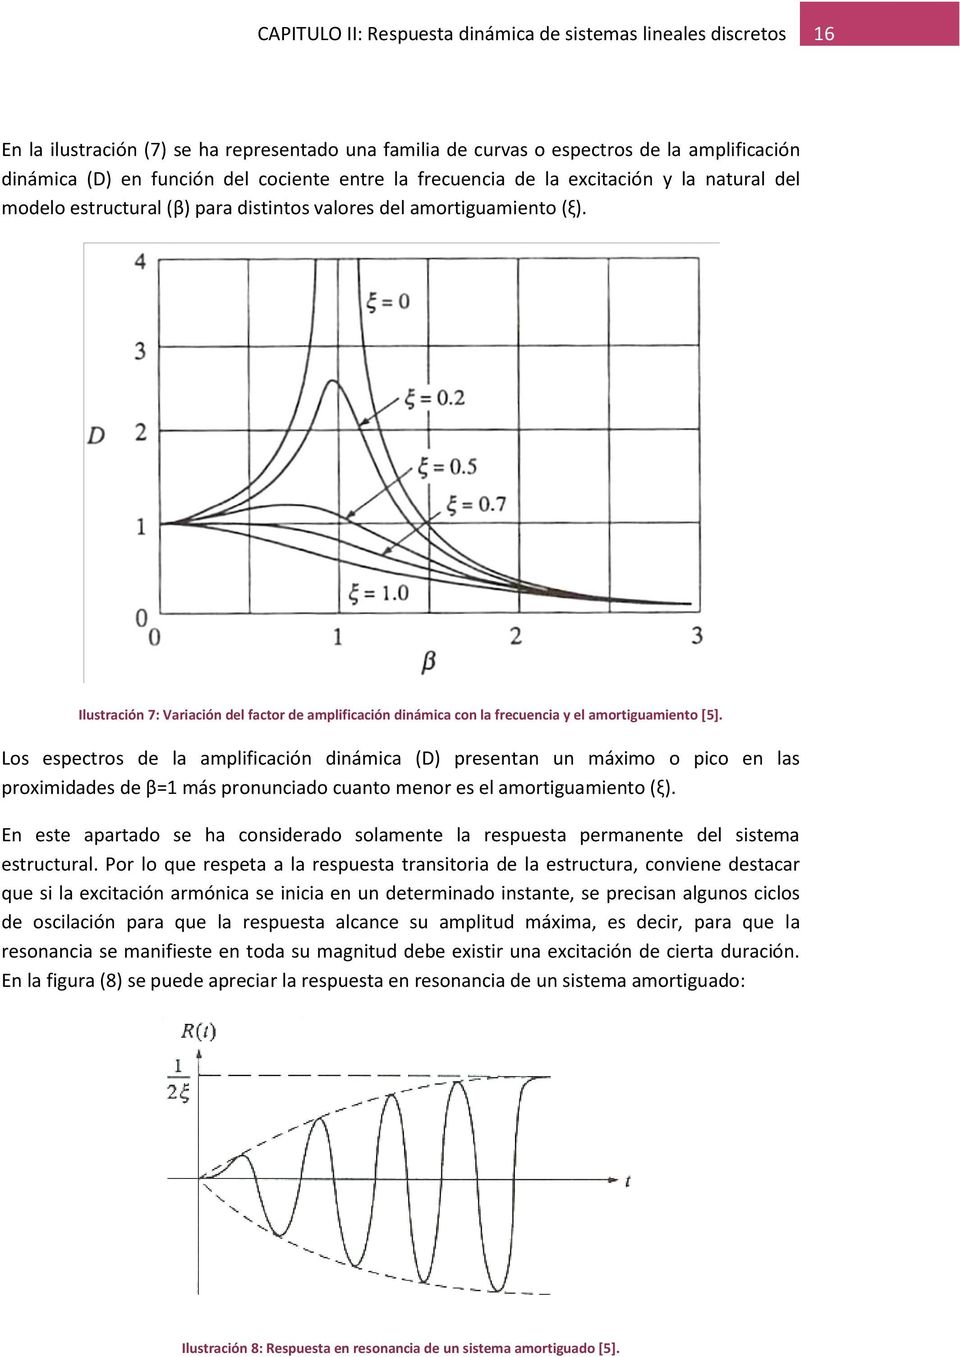 Ilustración 7: Variación del factor de amplificación dinámica con la frecuencia y el amortiguamiento [5].